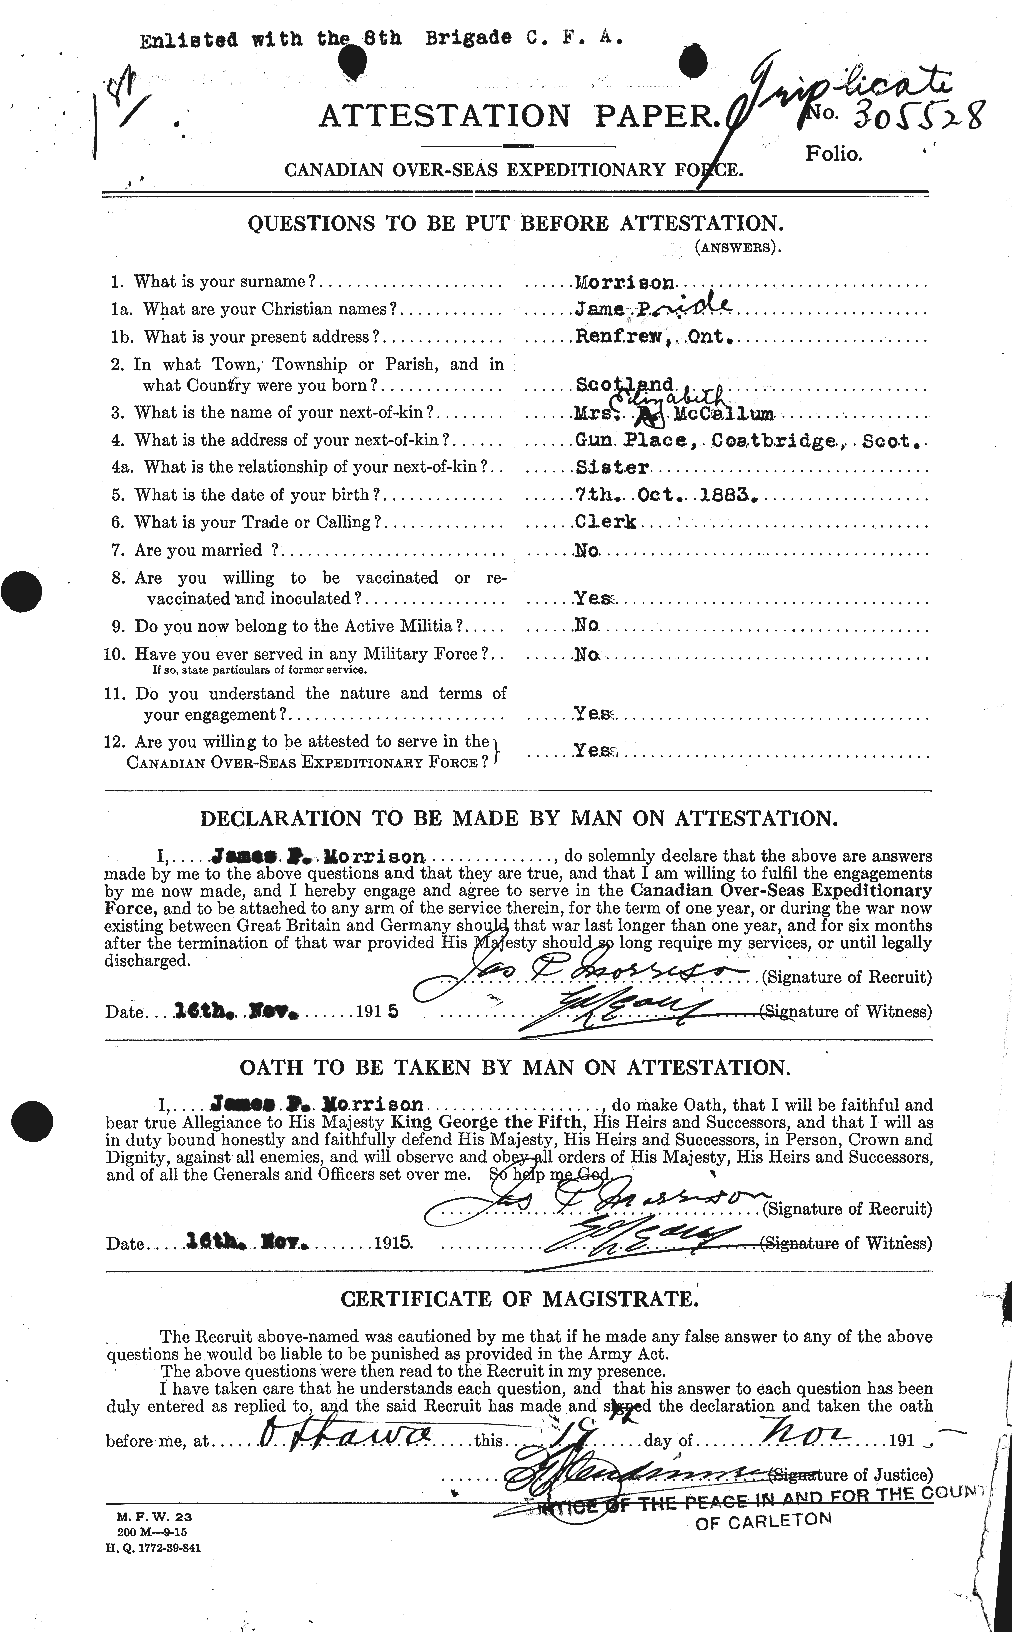 Dossiers du Personnel de la Première Guerre mondiale - CEC 506946a